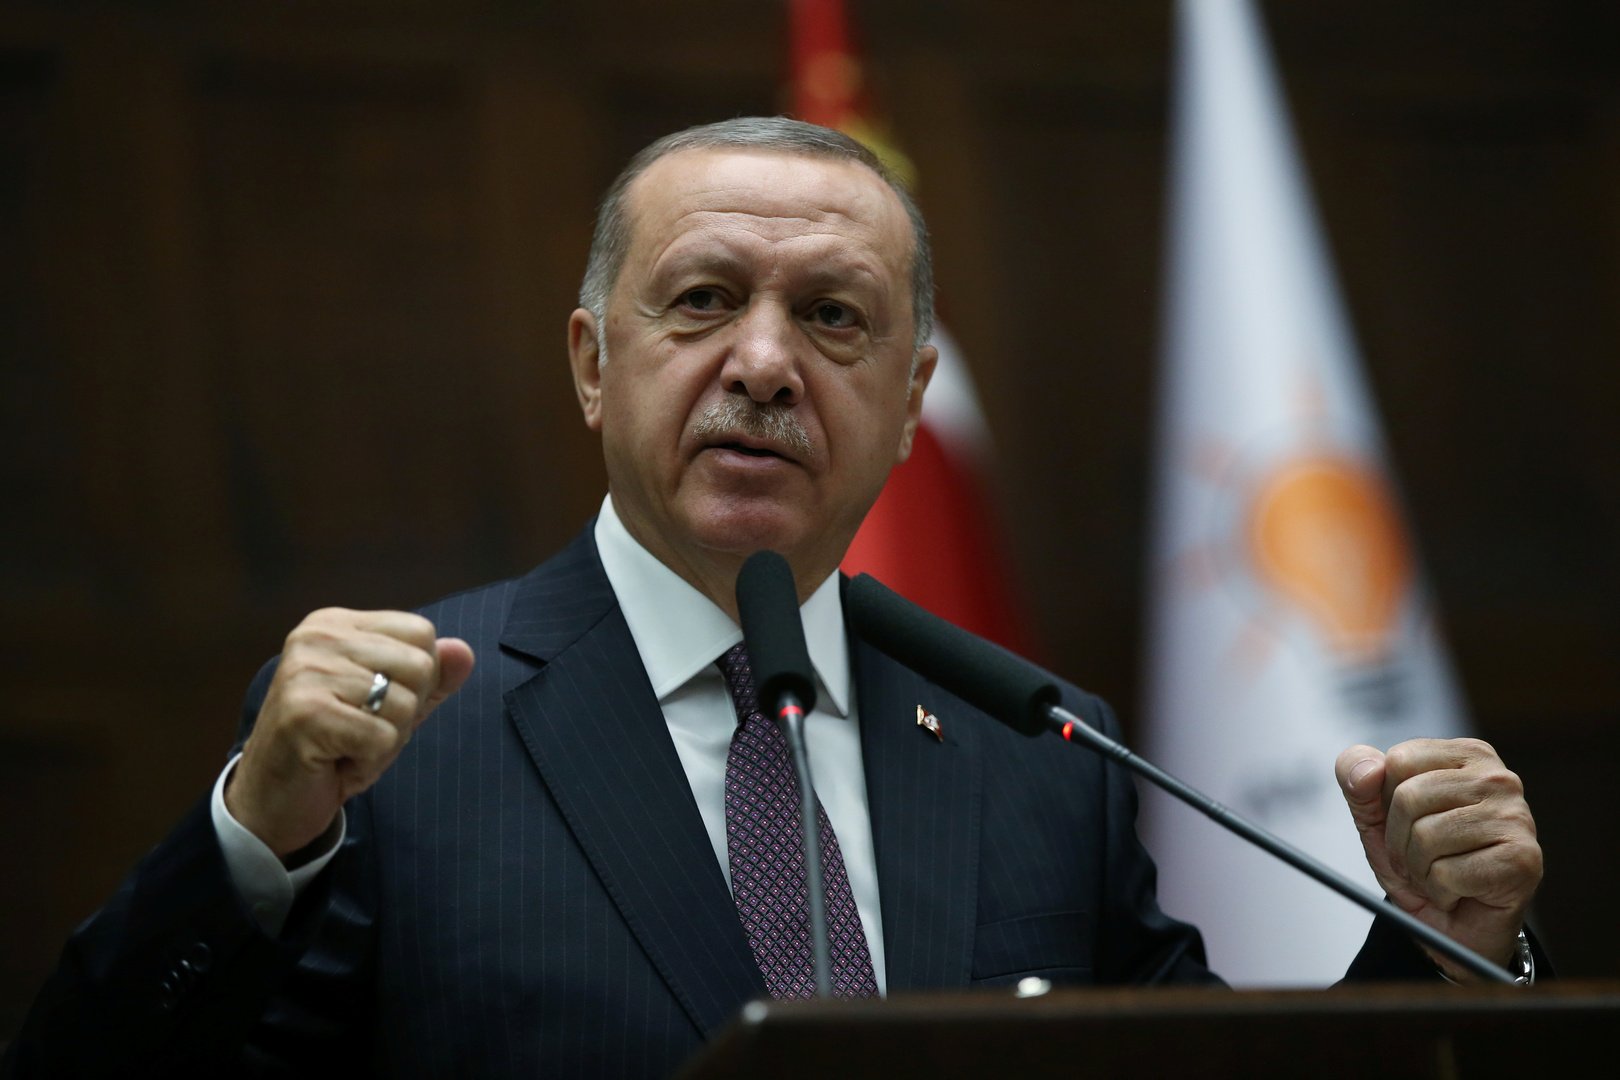 أردوغان: نوبل منحت جائزتها لشخص يقطُر قلمه دما وكراهية